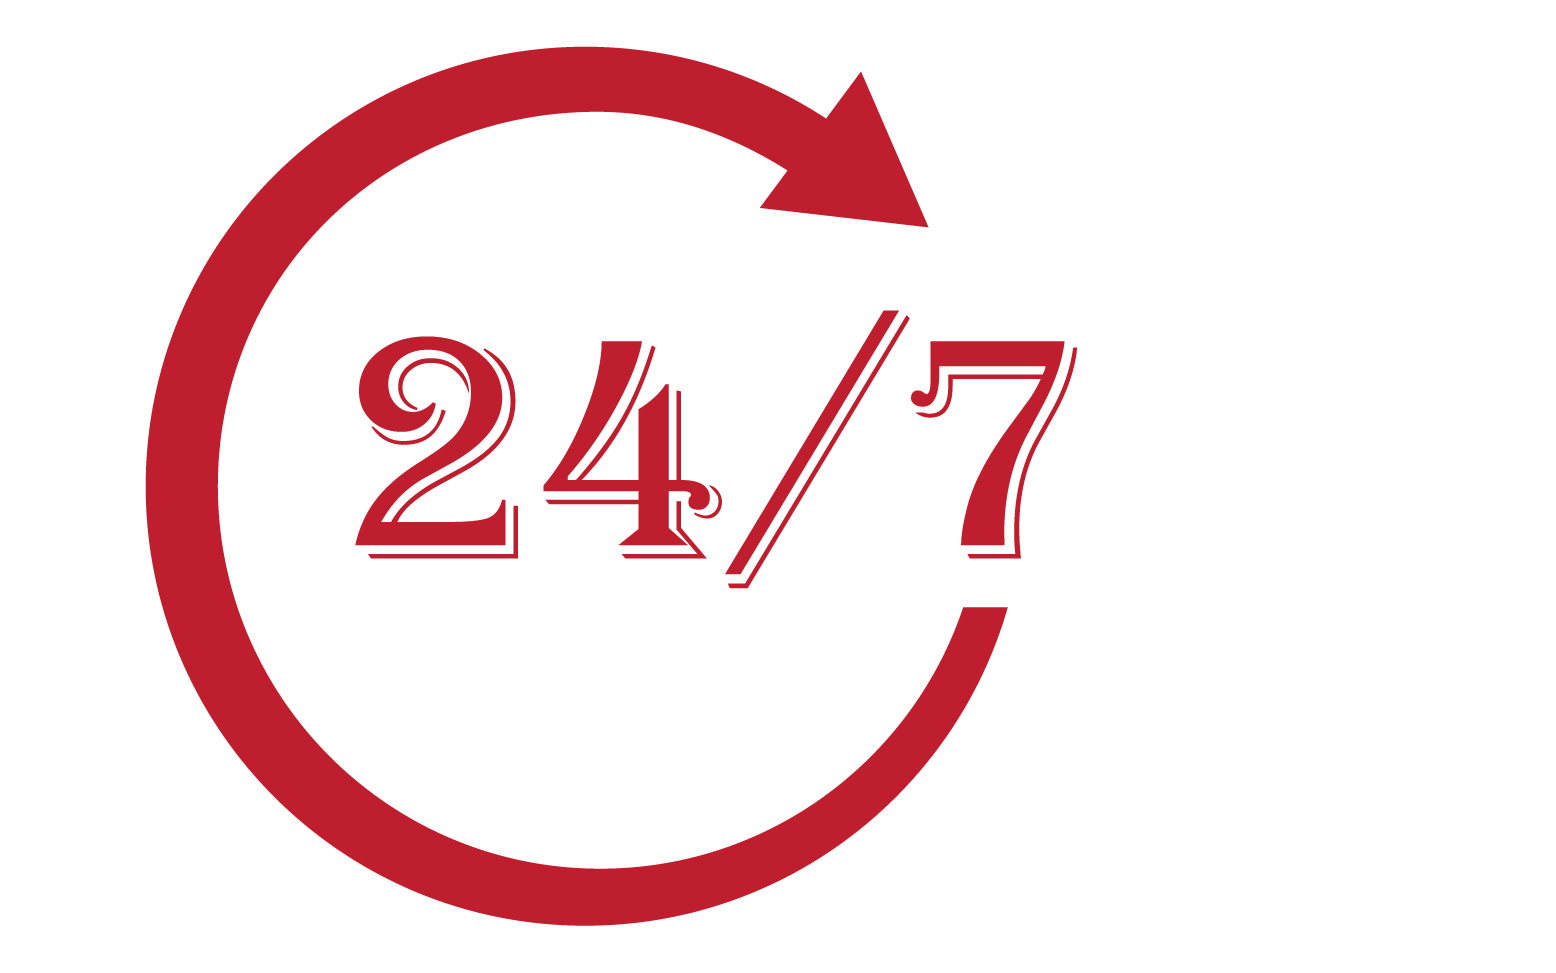 24 hour time icon logo design v4